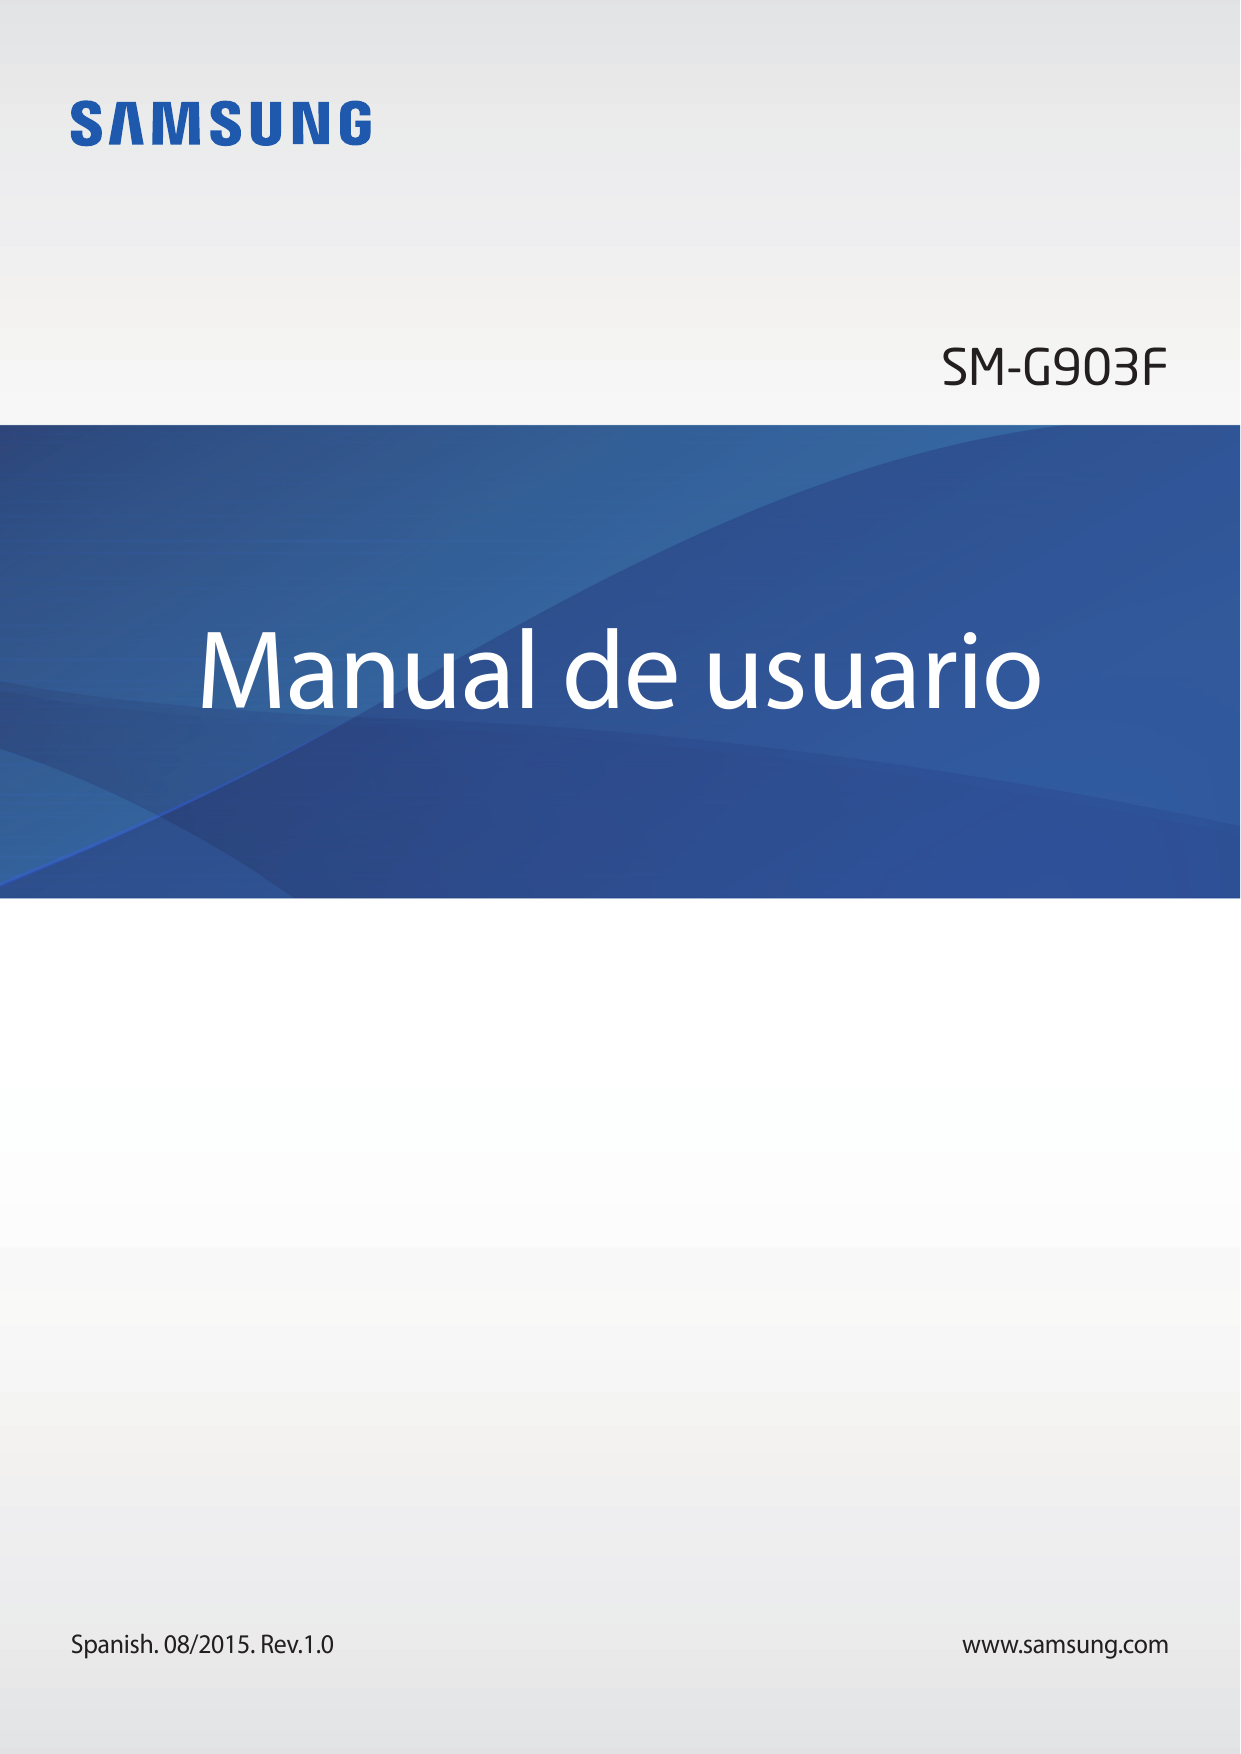 SM-G903FManual de usuarioSpanish. 08/2015. Rev.1.0www.samsung.com